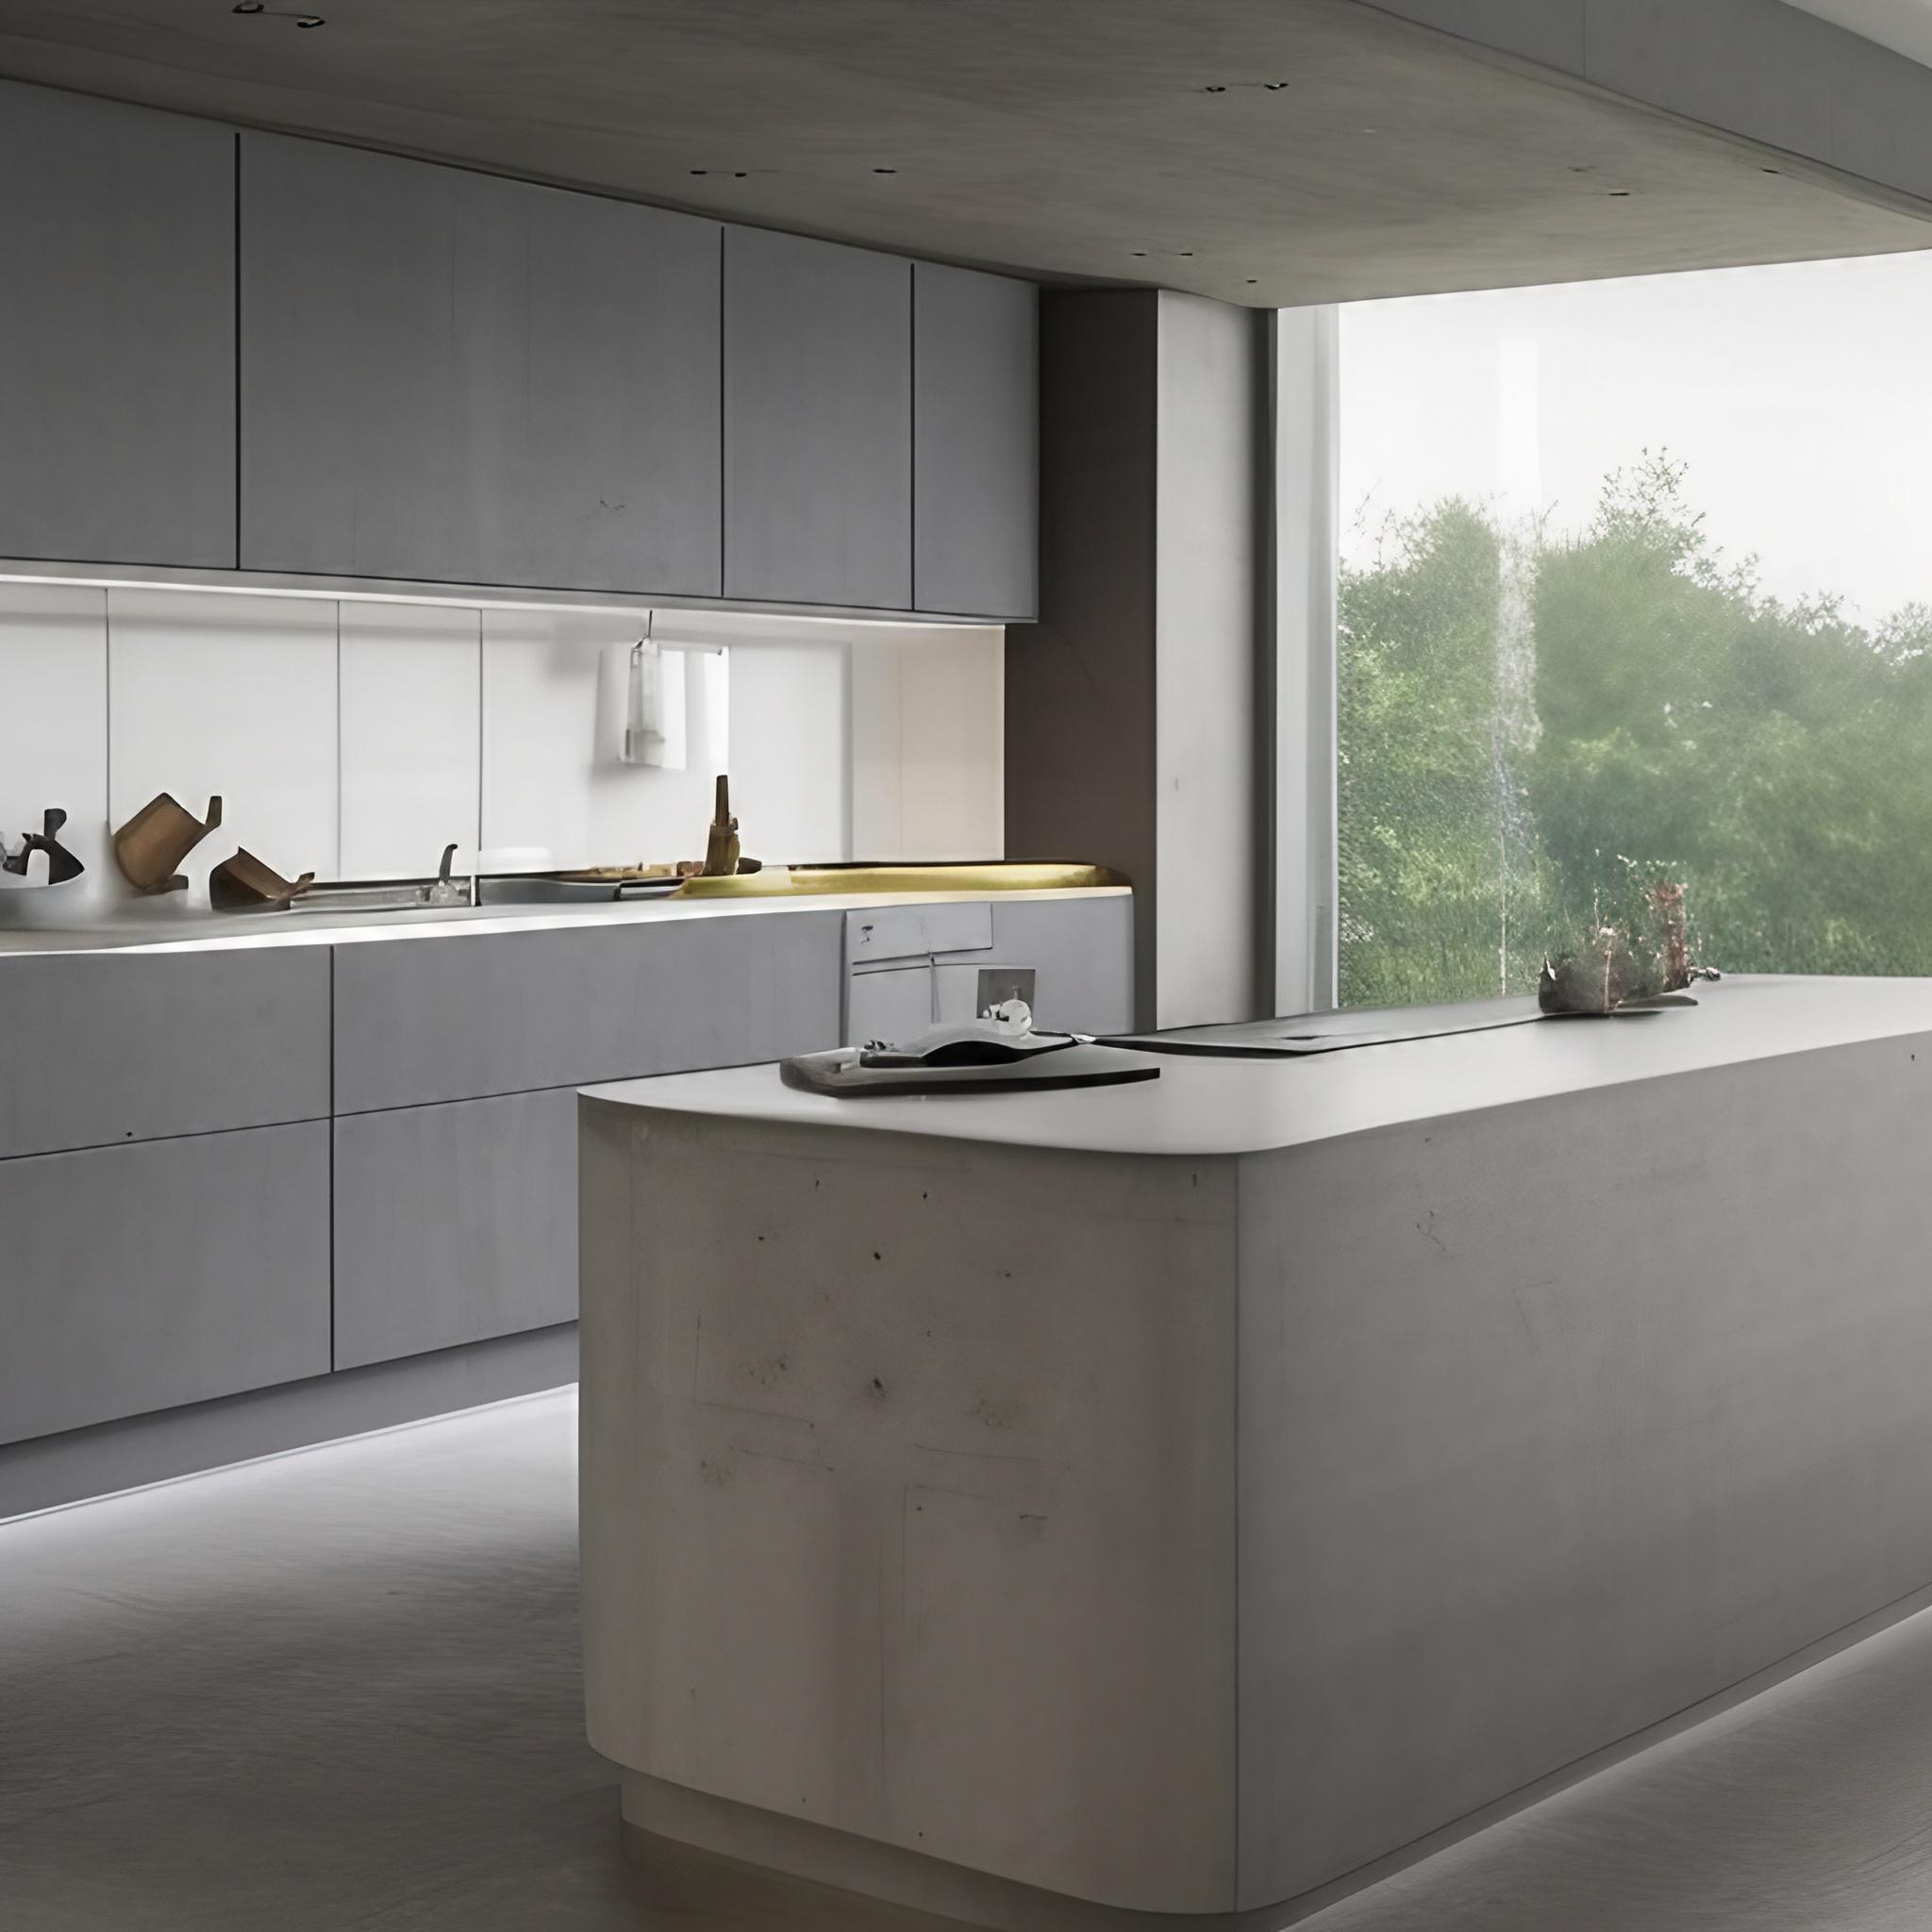 modern kitchen interior with a concrete worktop